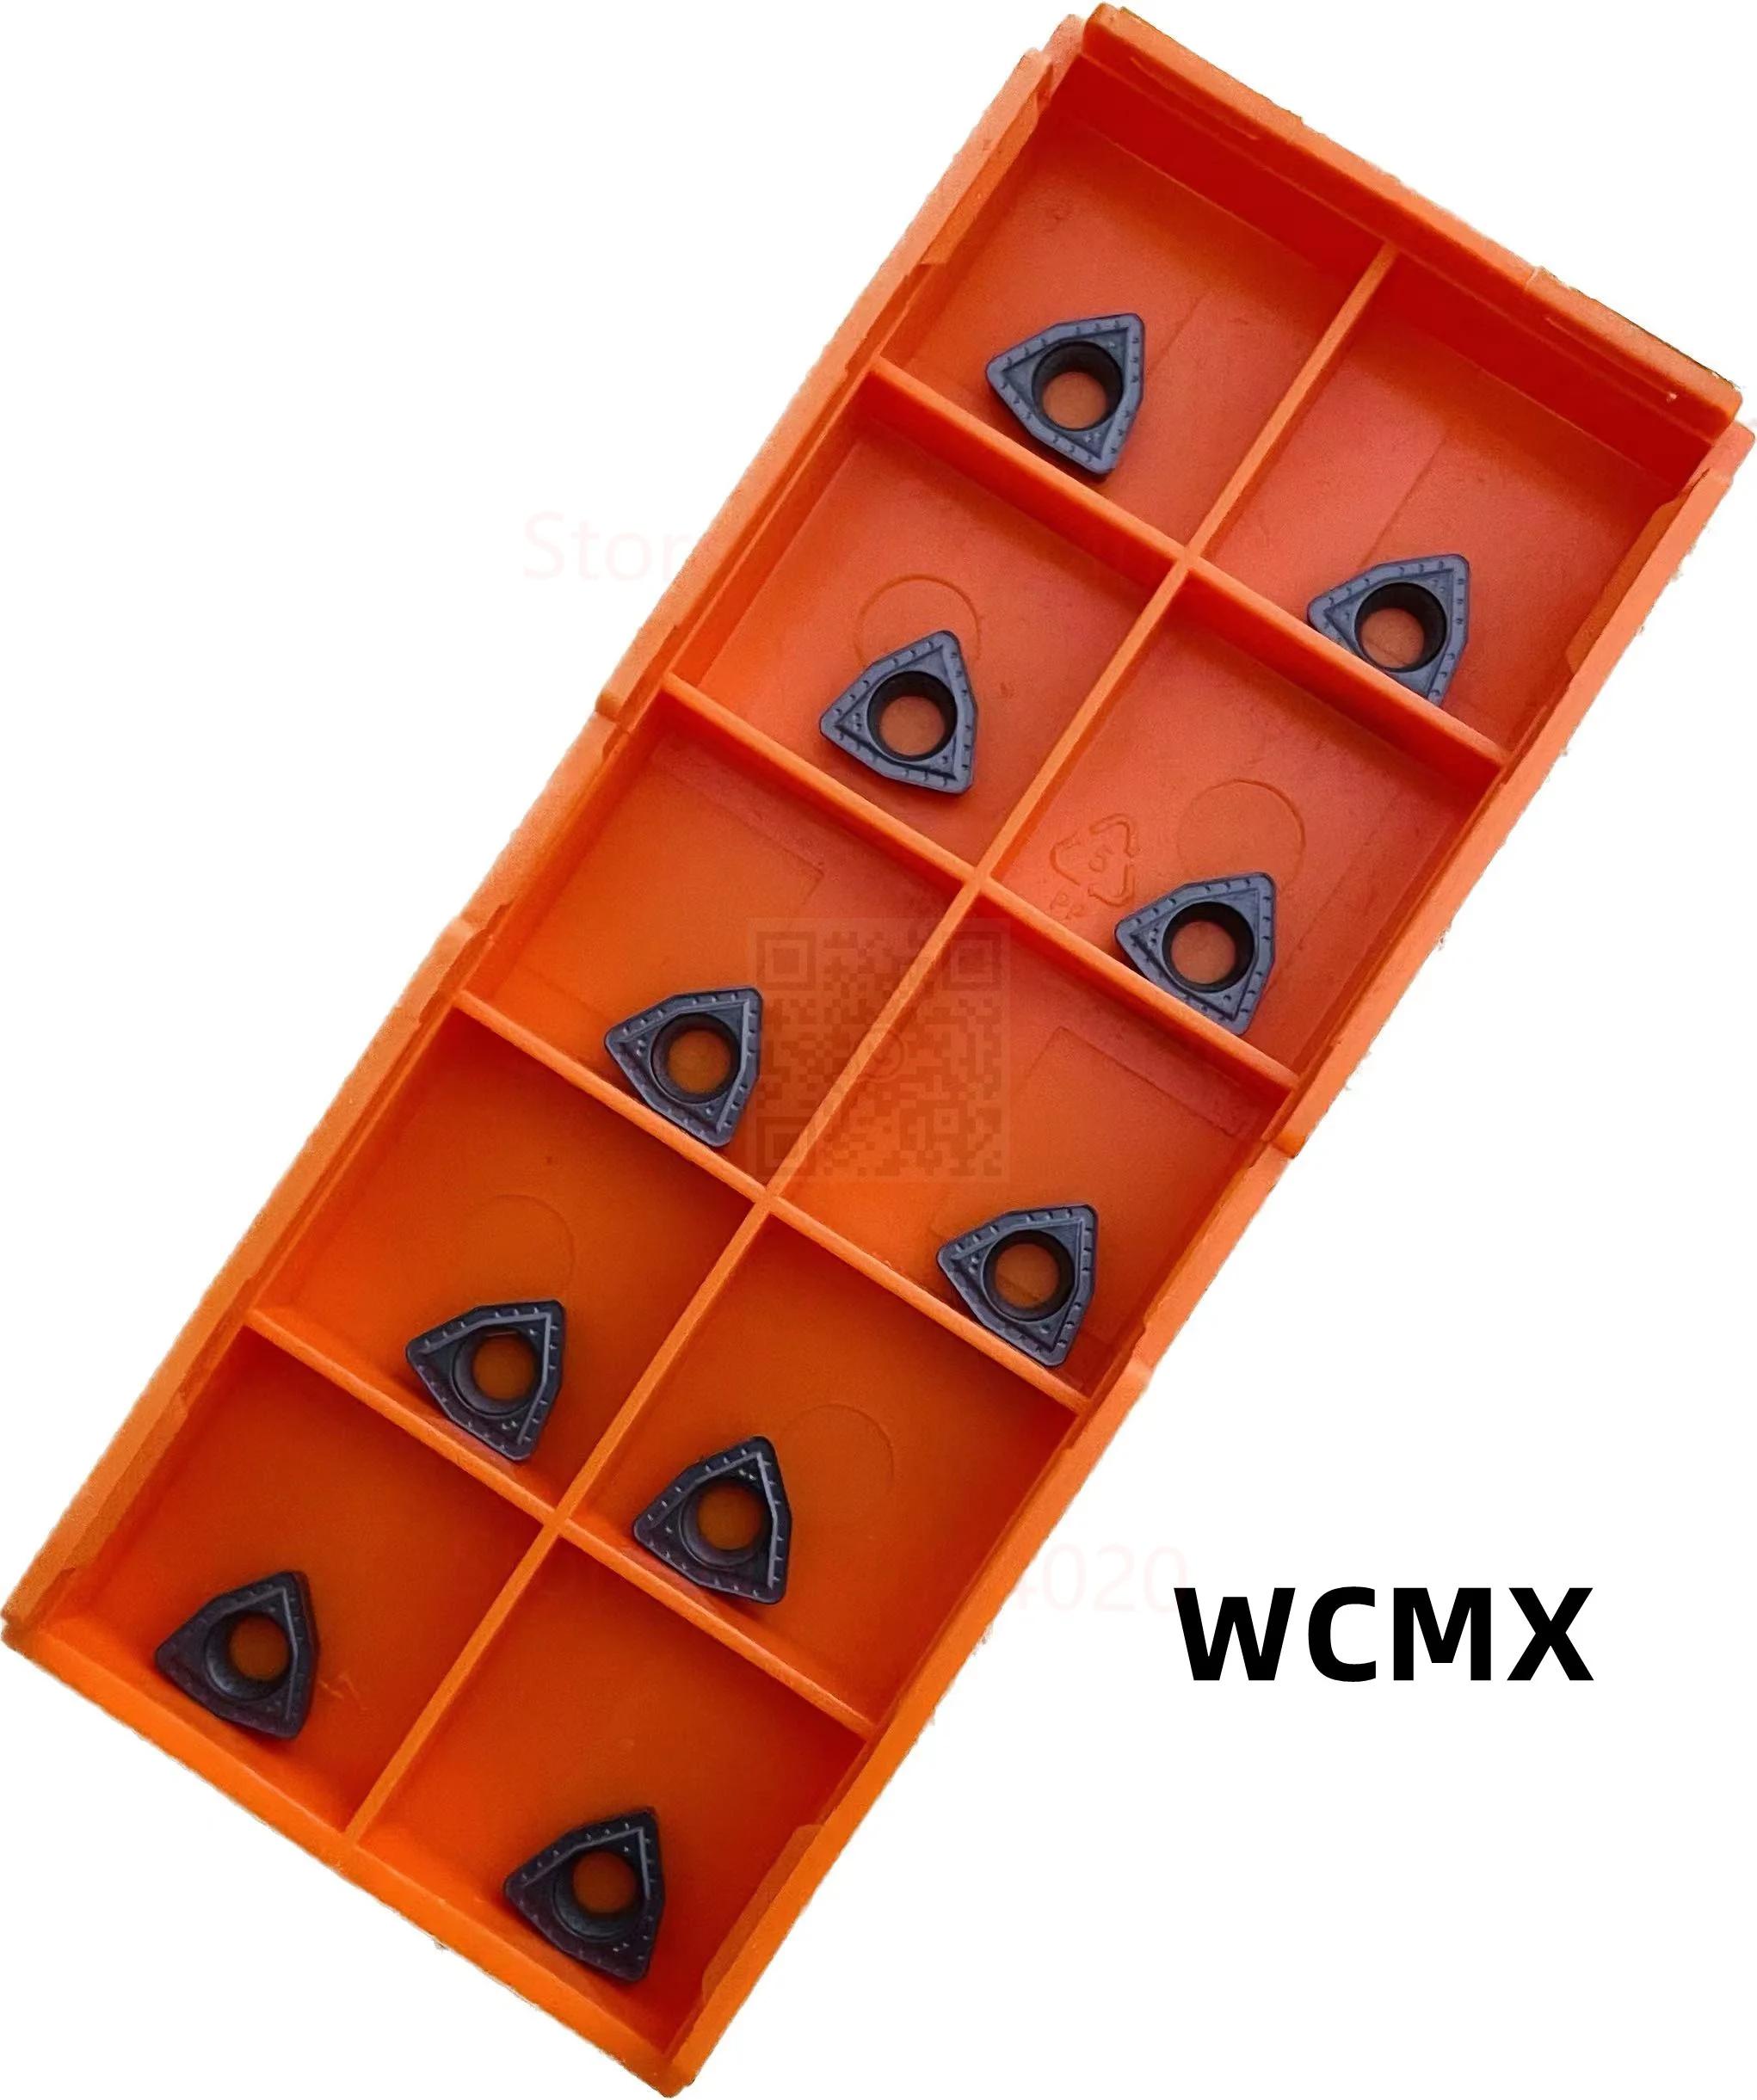 WCMX030208B-ZK WCMX040208B-ZK WCMX050308B-ZK WCMX06T308B-ZK WCMX080412B-ZK, WCMT WCMX U 帱 μƮ, OP1215 OP1315